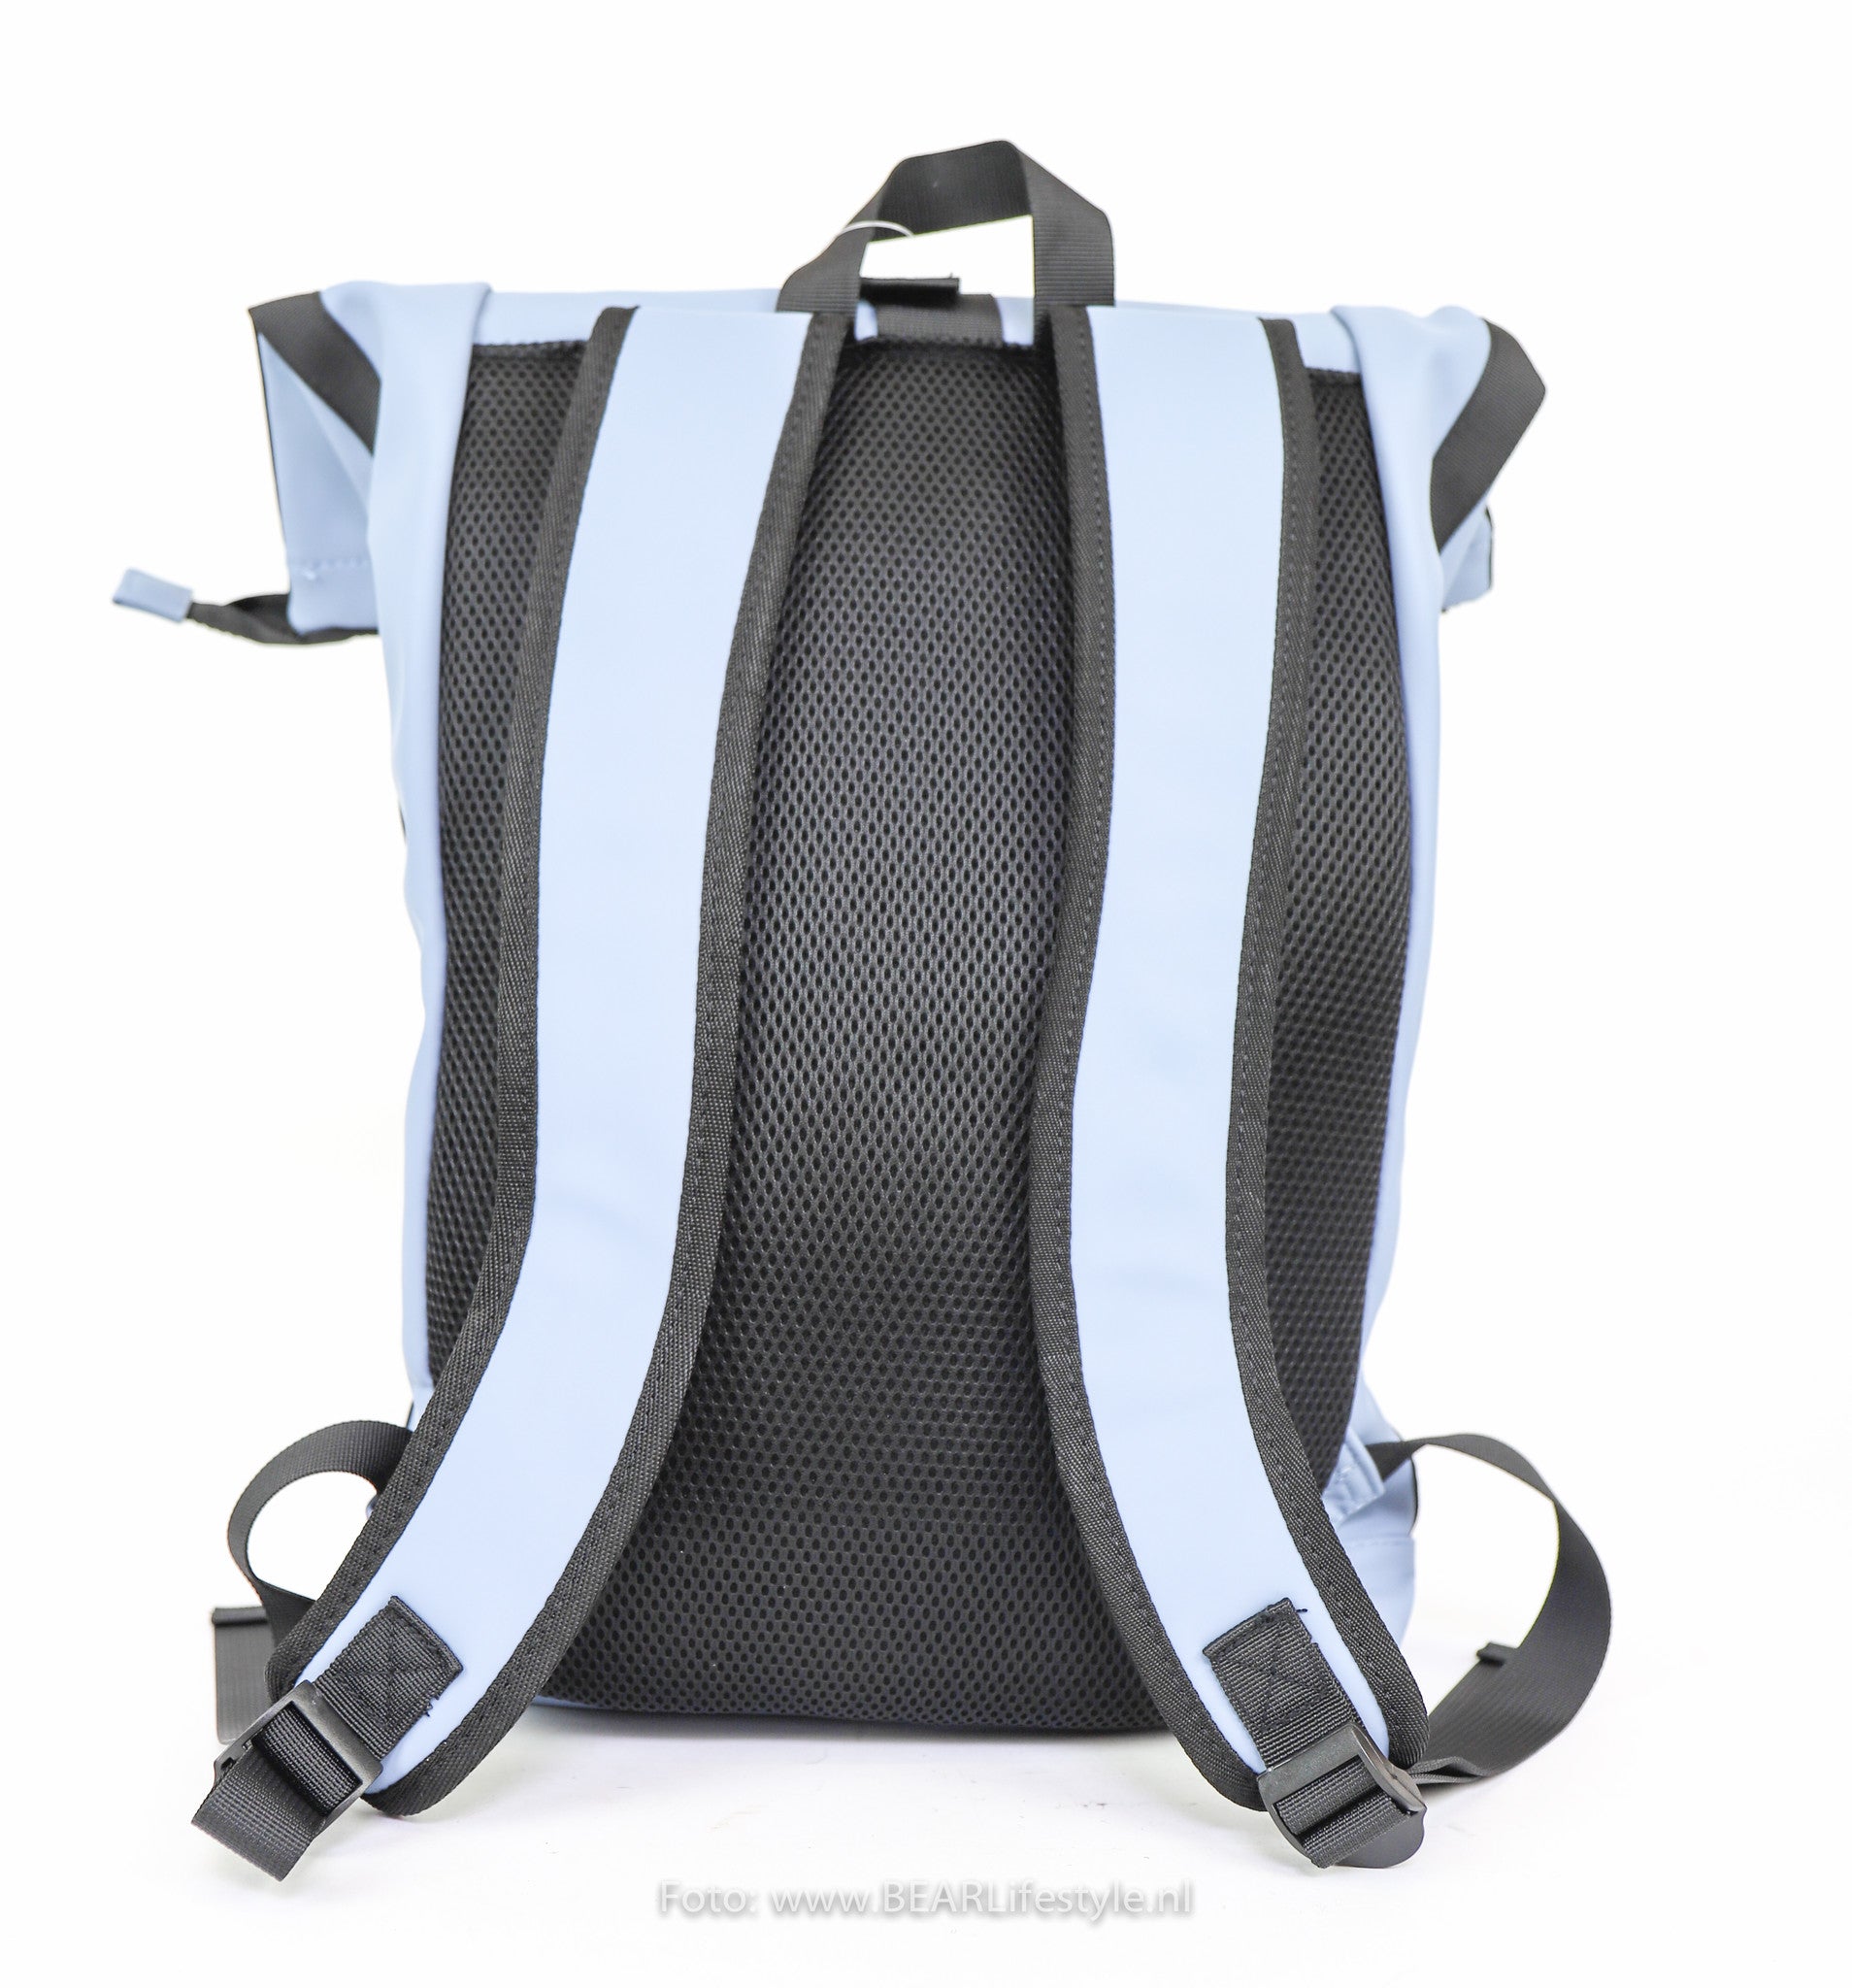 Backpack 'Mart' light blue 16L